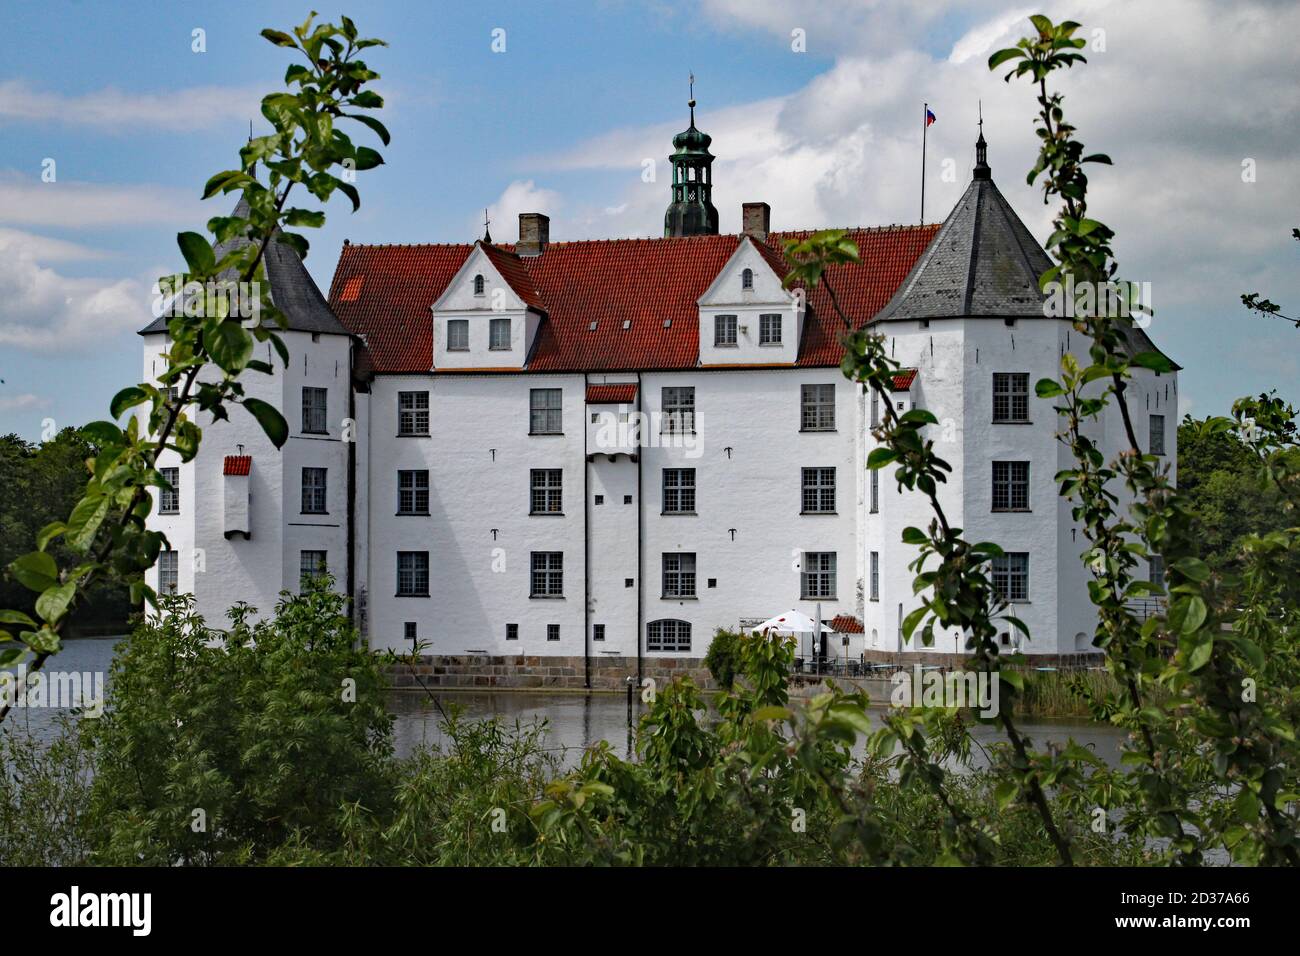 Lo storico castello bianco di Glucksburg a Flensburg in Germania. Qui vivevano gli antenati della famiglia reale danese. Foto Stock